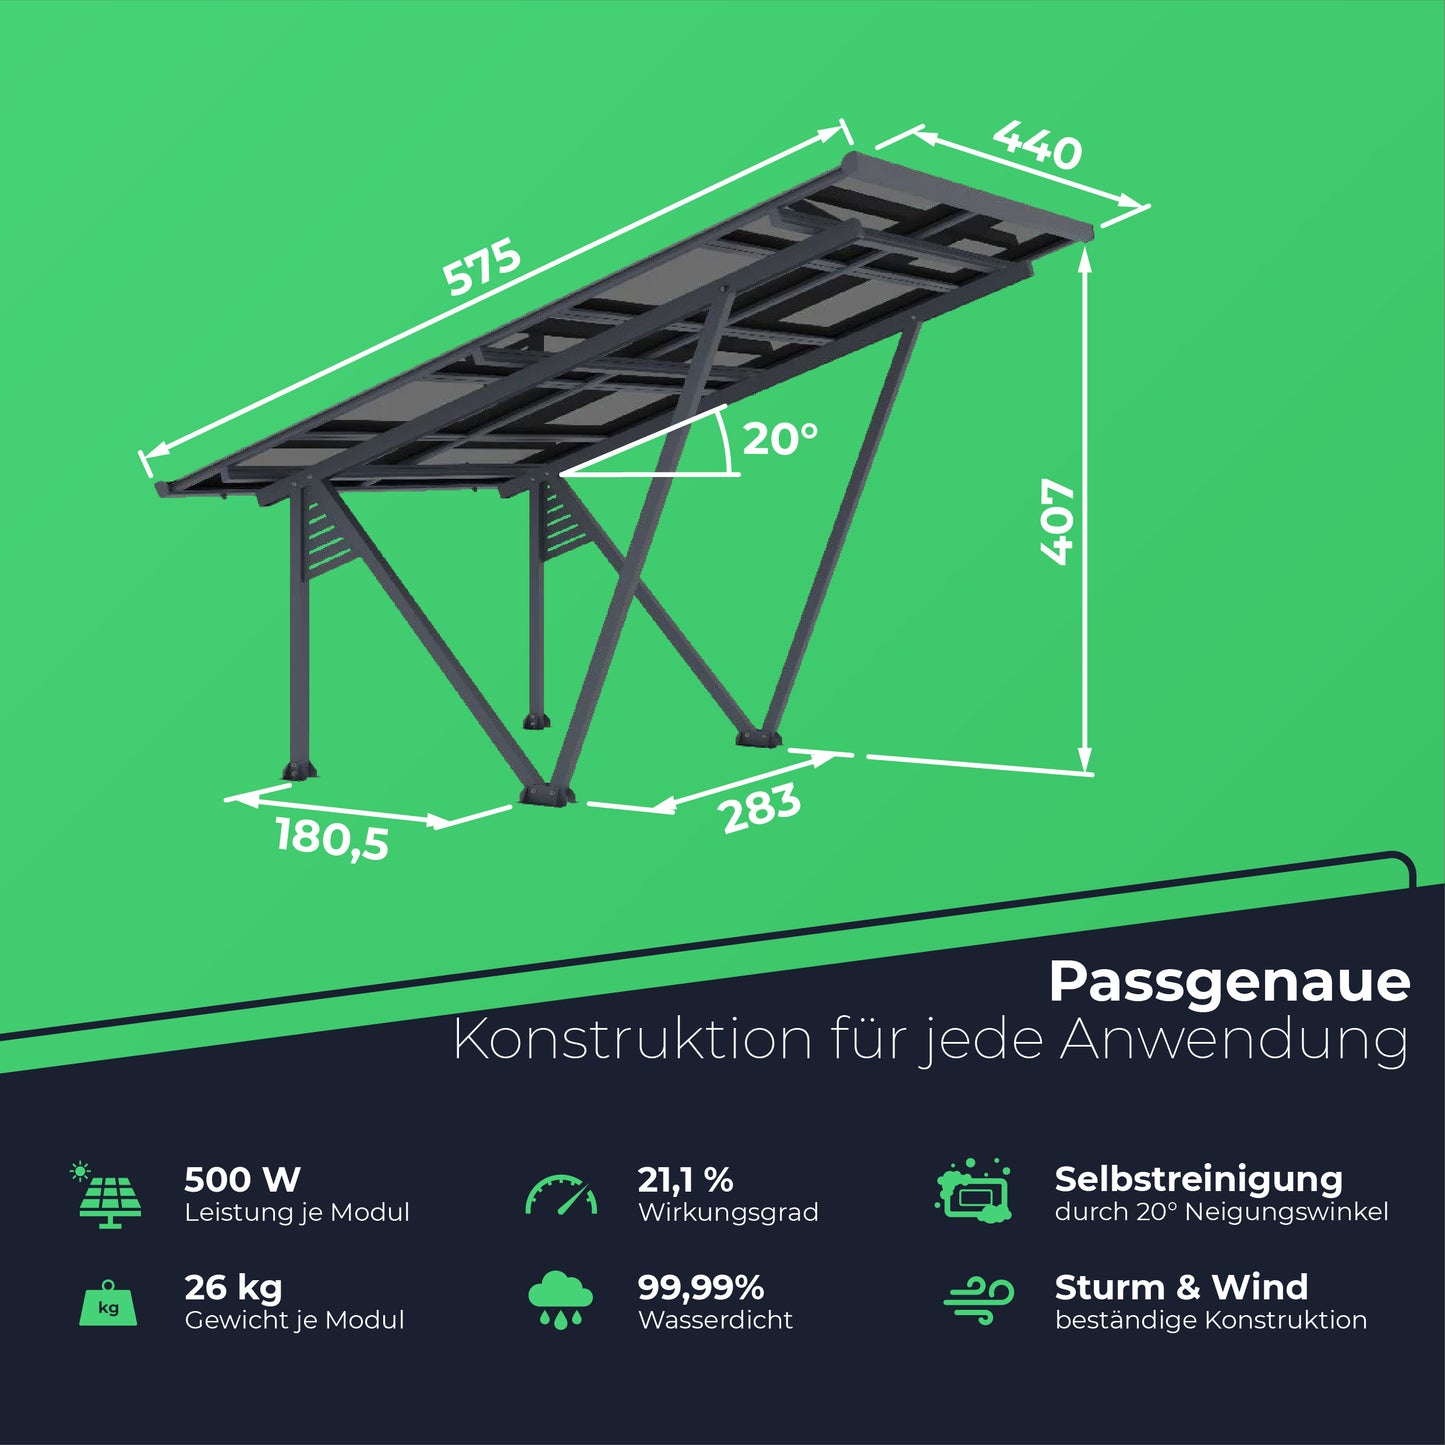 Solar Carport 5000 Watt | 1 Stellplatz | Versiegeltes Dach inkl. Regenrinne